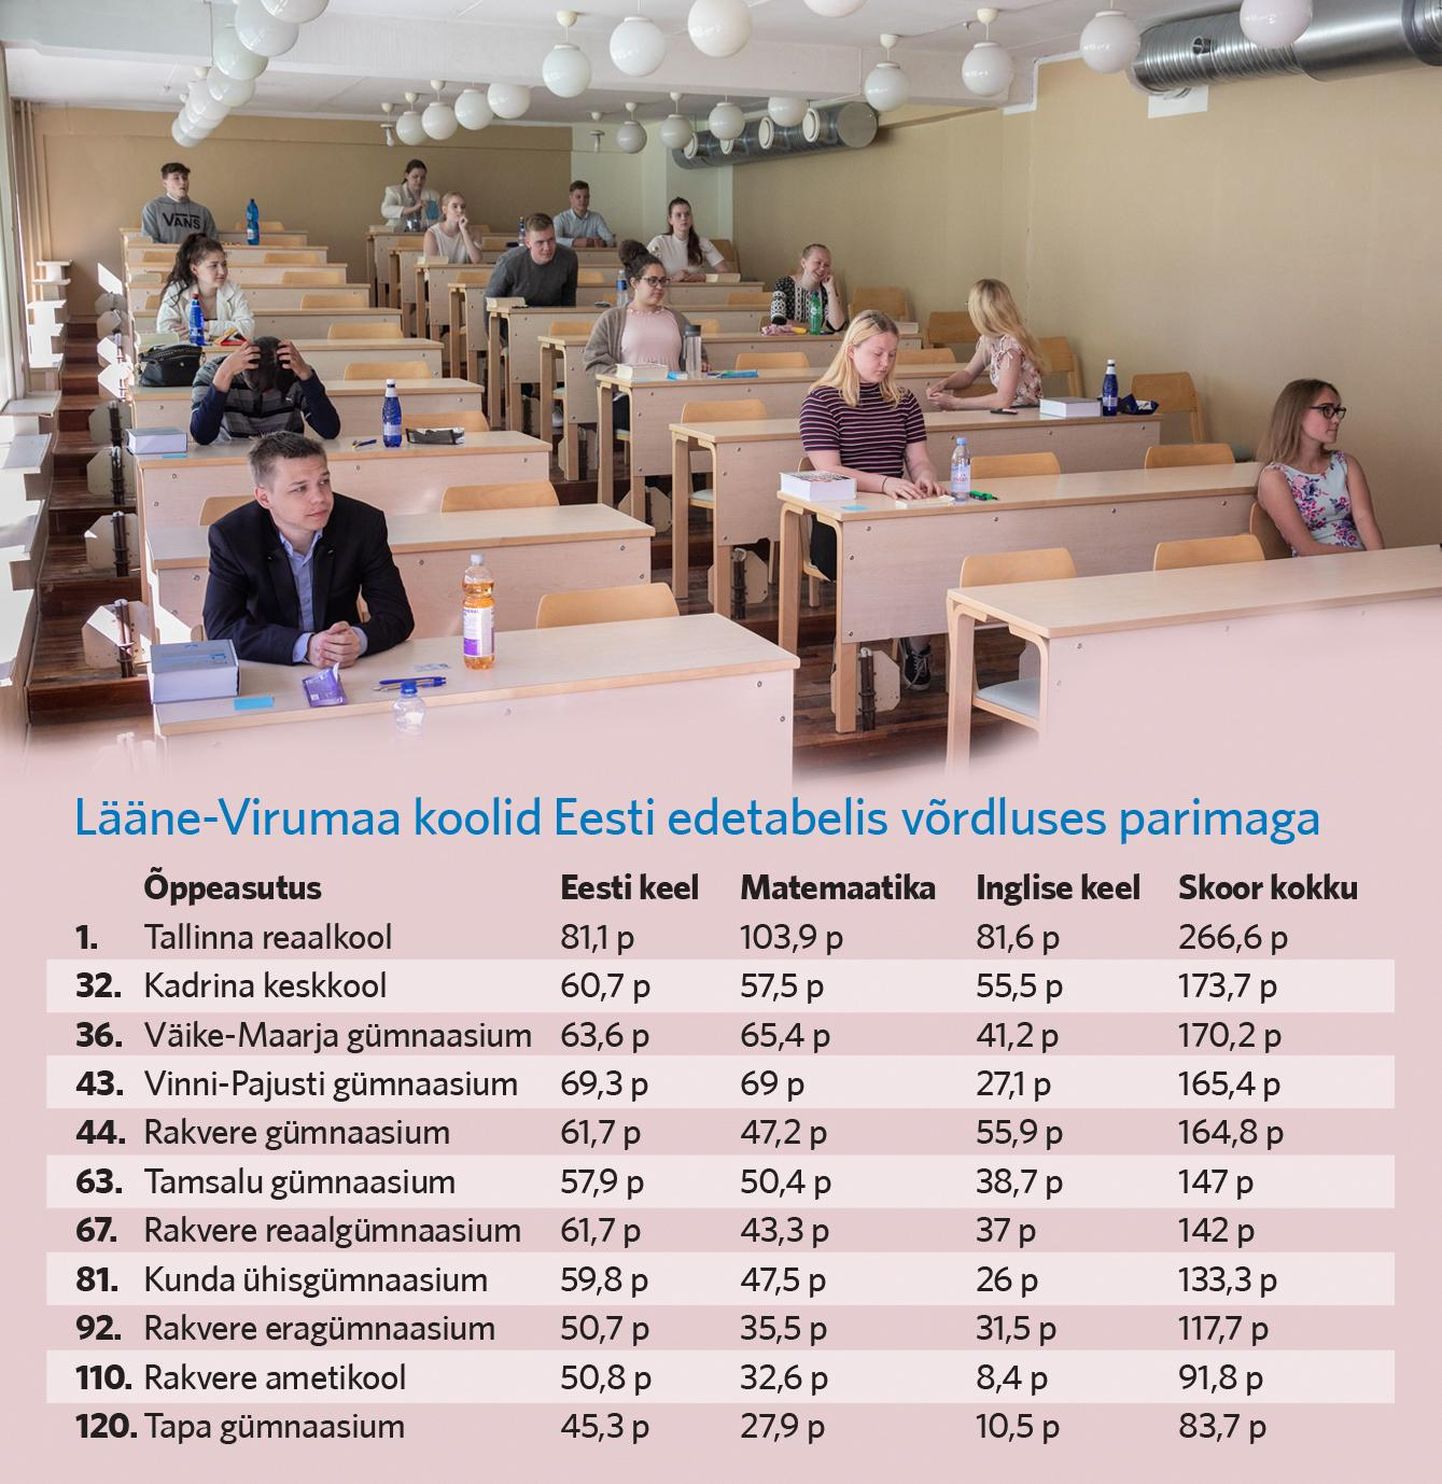 Lääne-Virumaa koolid Eesti edetabelis võrdluses parimaga.